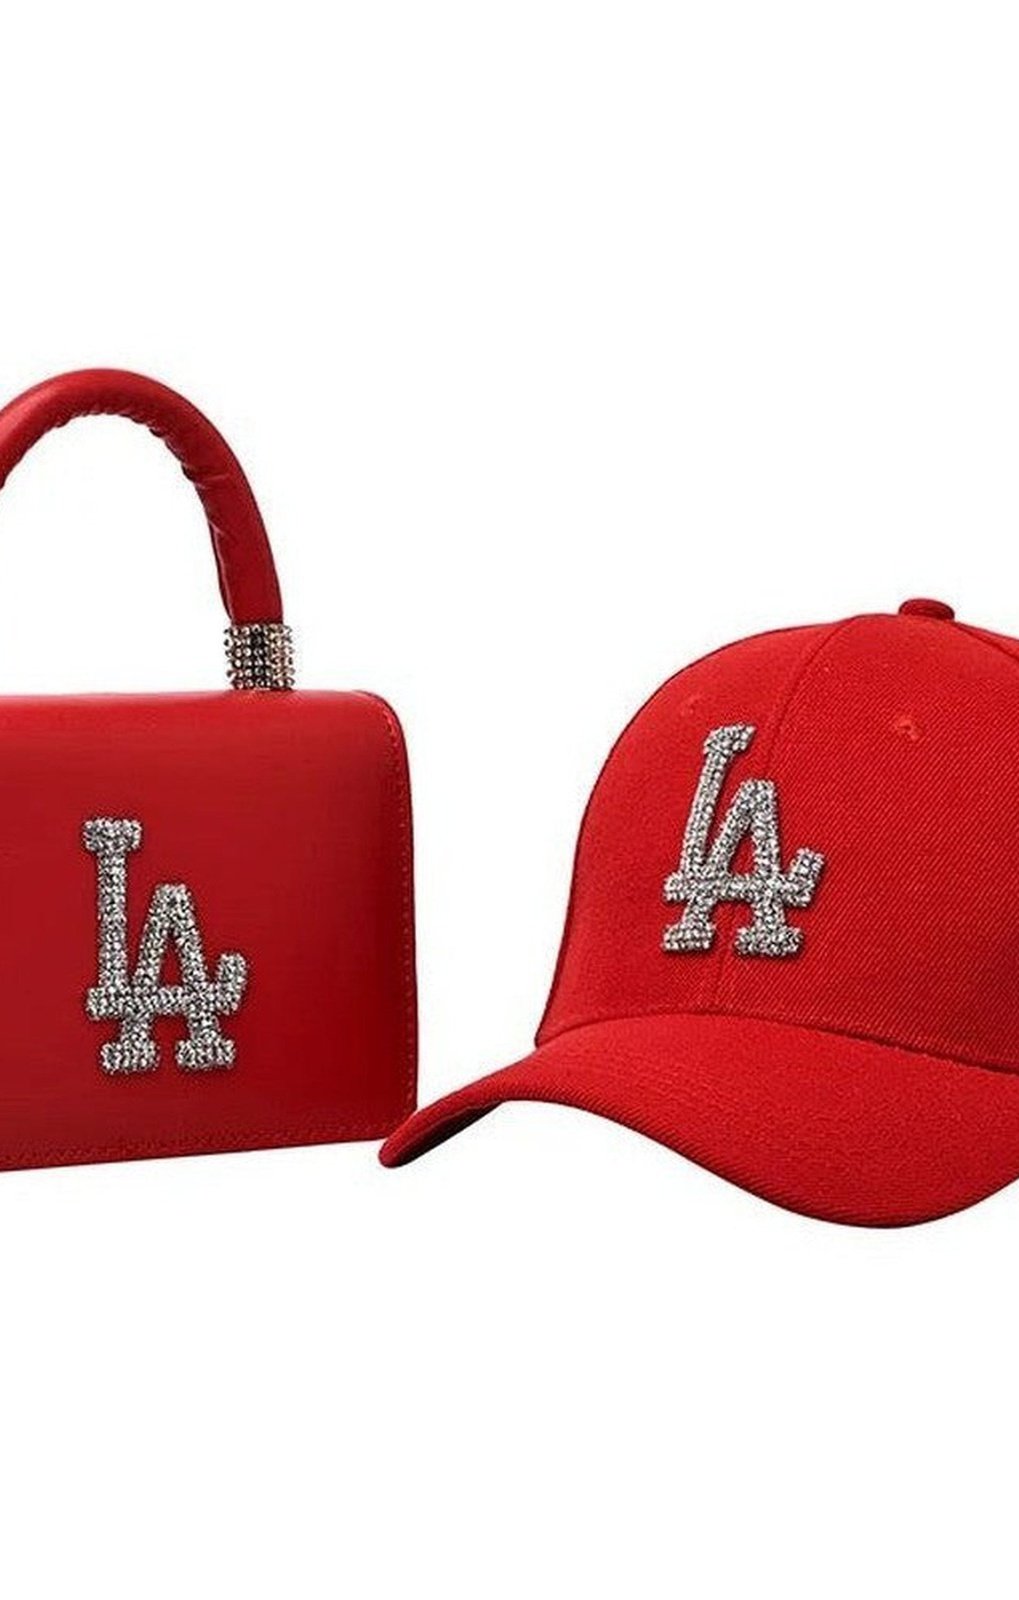 LA matching bag and hat set (Many Colors)